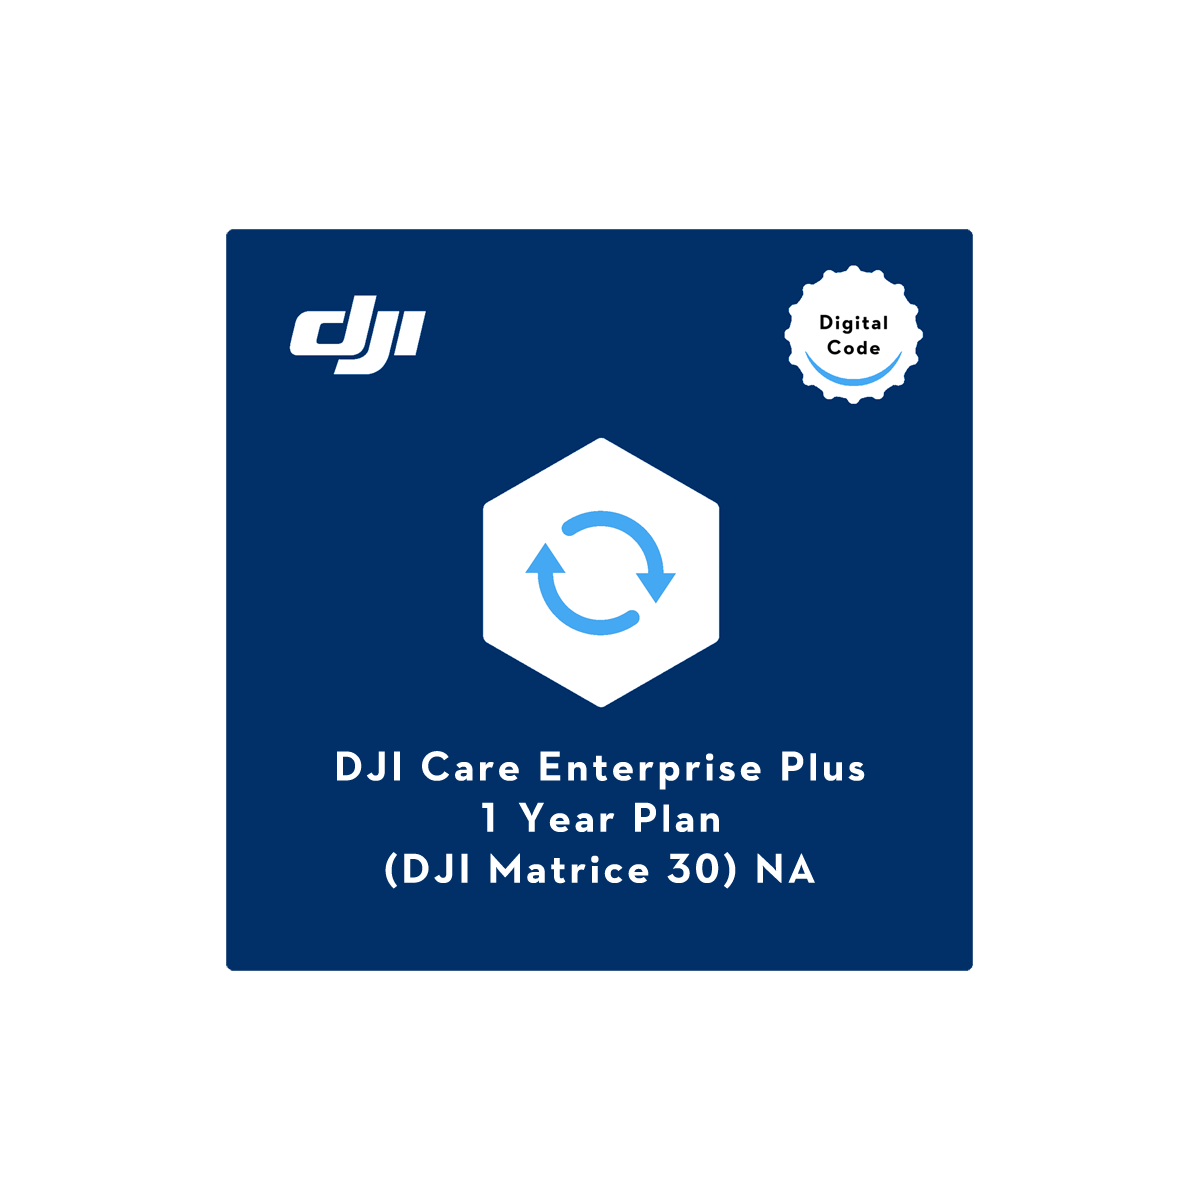 DJI Care Enterprise Plus (DJI M30) NA